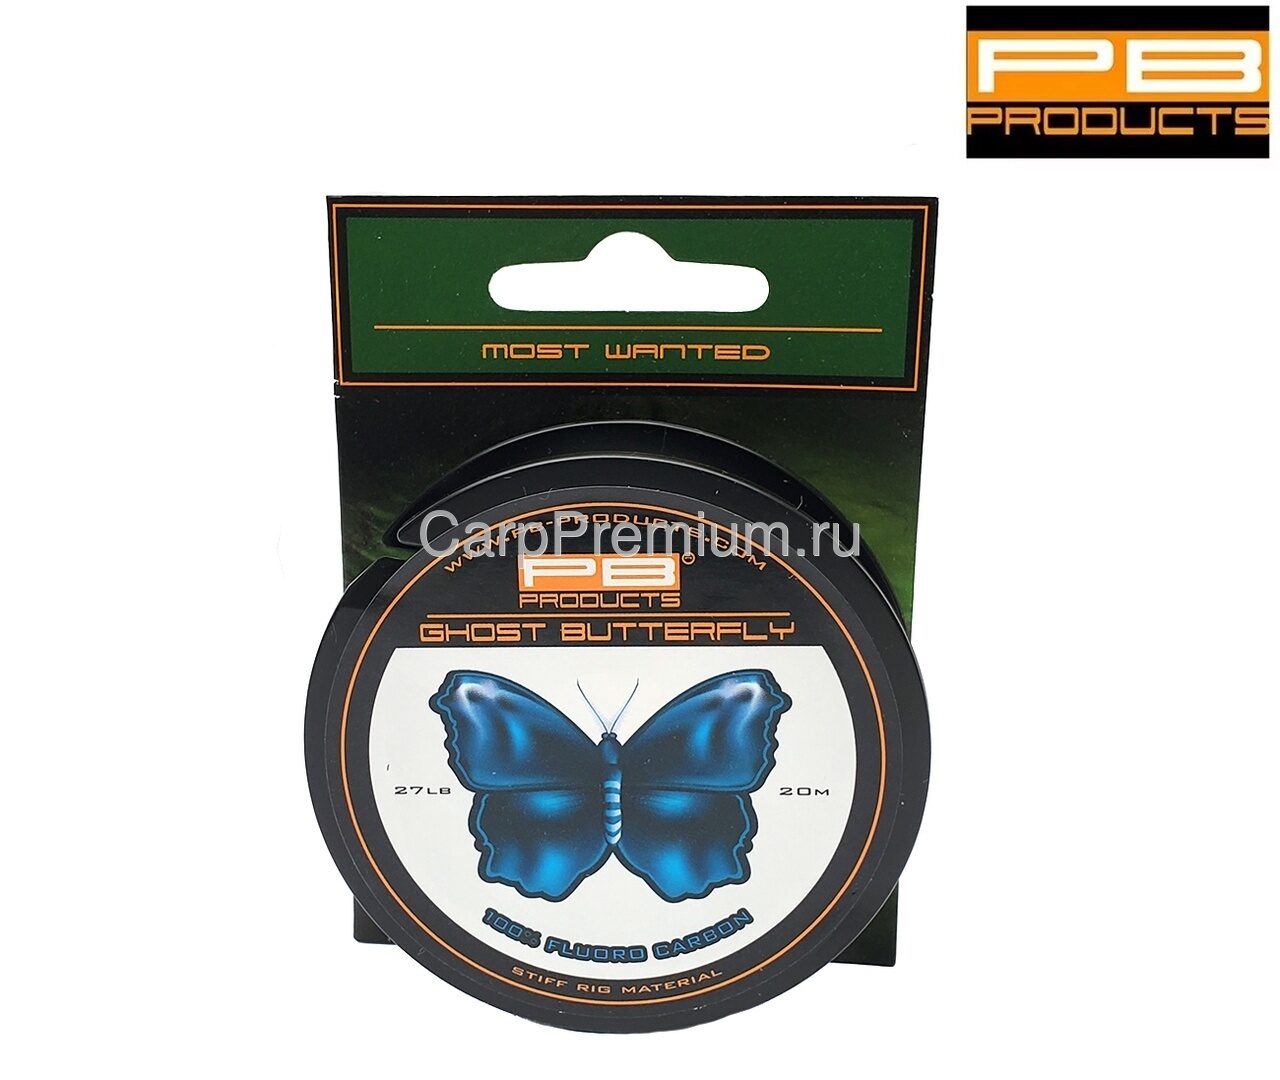 Флюорокарбон PB Products - Ghost Butterfly 12.2 кг / 27 lb, 20 м